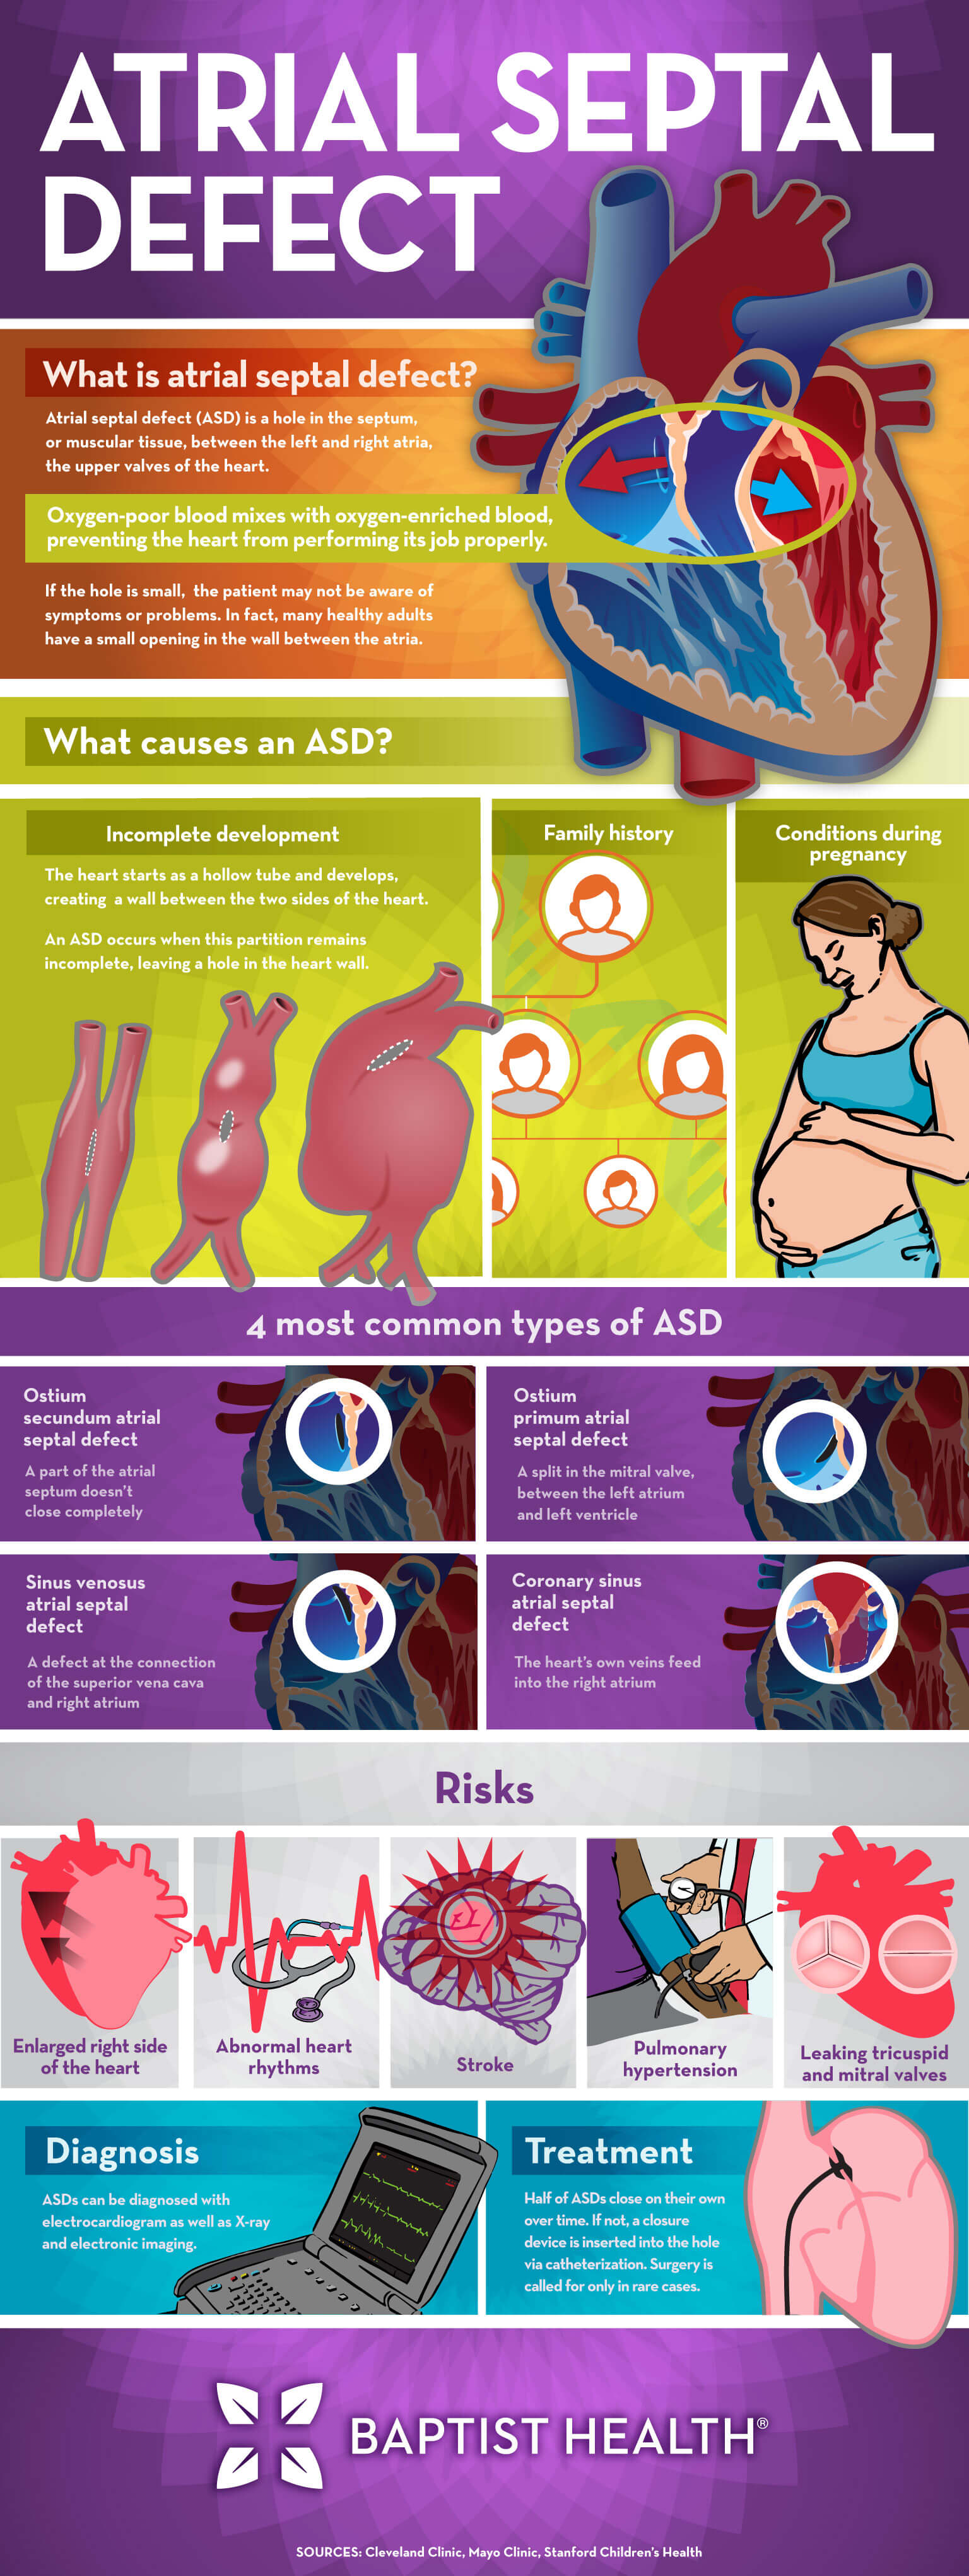 atrial septal defect infographic